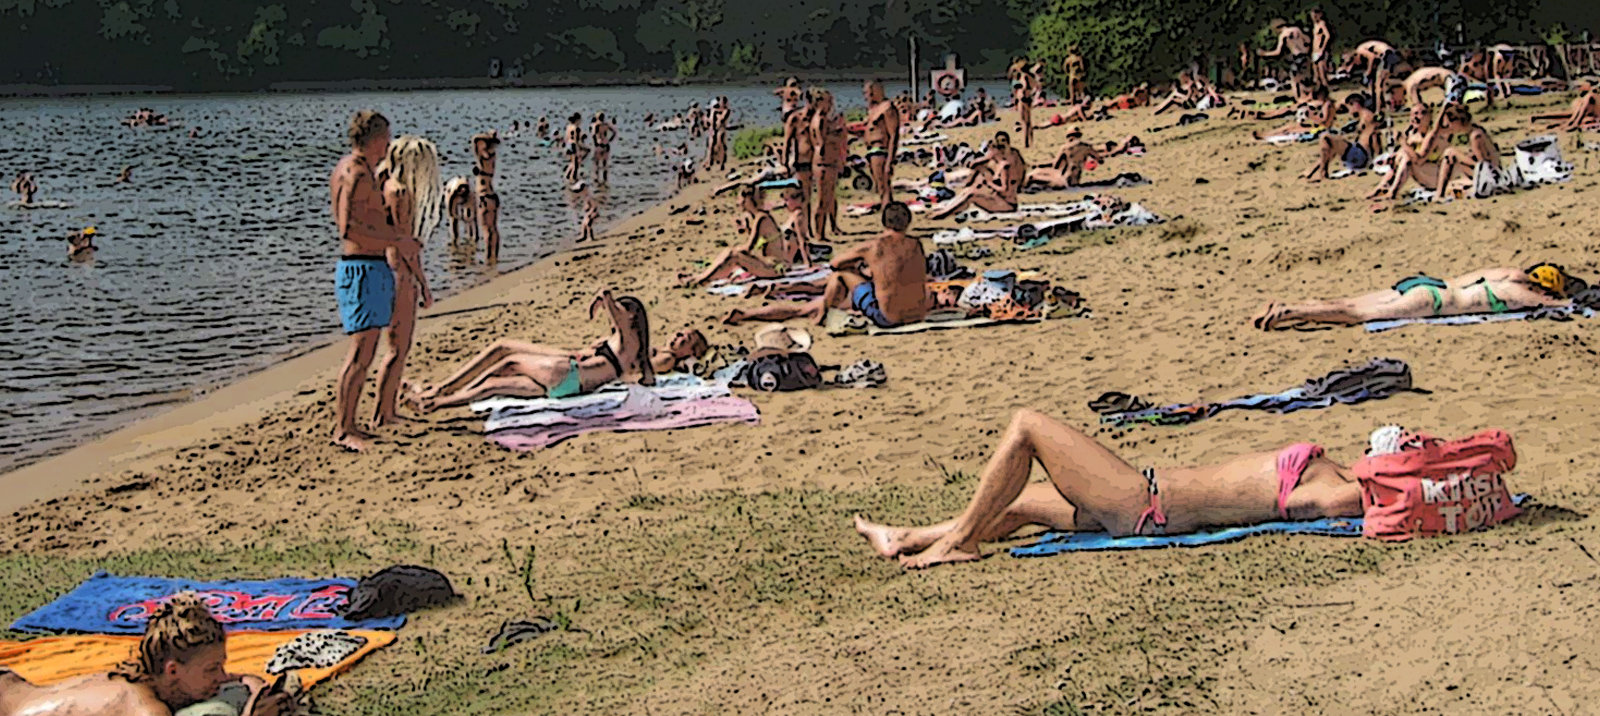 Βουτάνε οι Μοσχοβίτισες  γυμνές στο ποτάμι, τύφλα να ΄χει το Μαϊάμι! (photos)